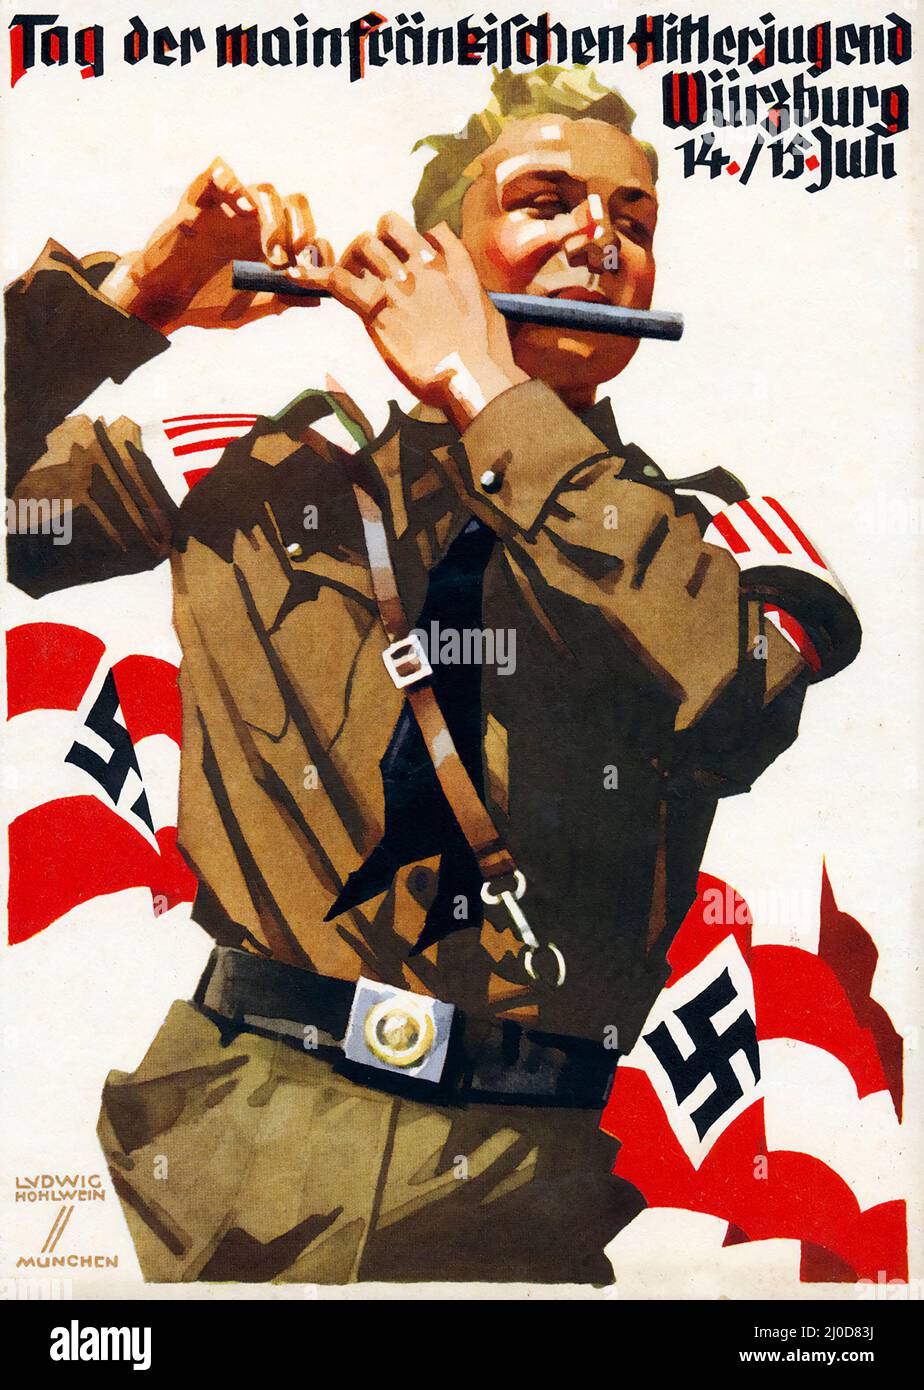 Nazi propaganda by Ludwig HOHLWEIN, Tag der mainfränkischen Hitlerjugend Würzburg Ansichtskarte Propaganda, c 1938 Stock Photo